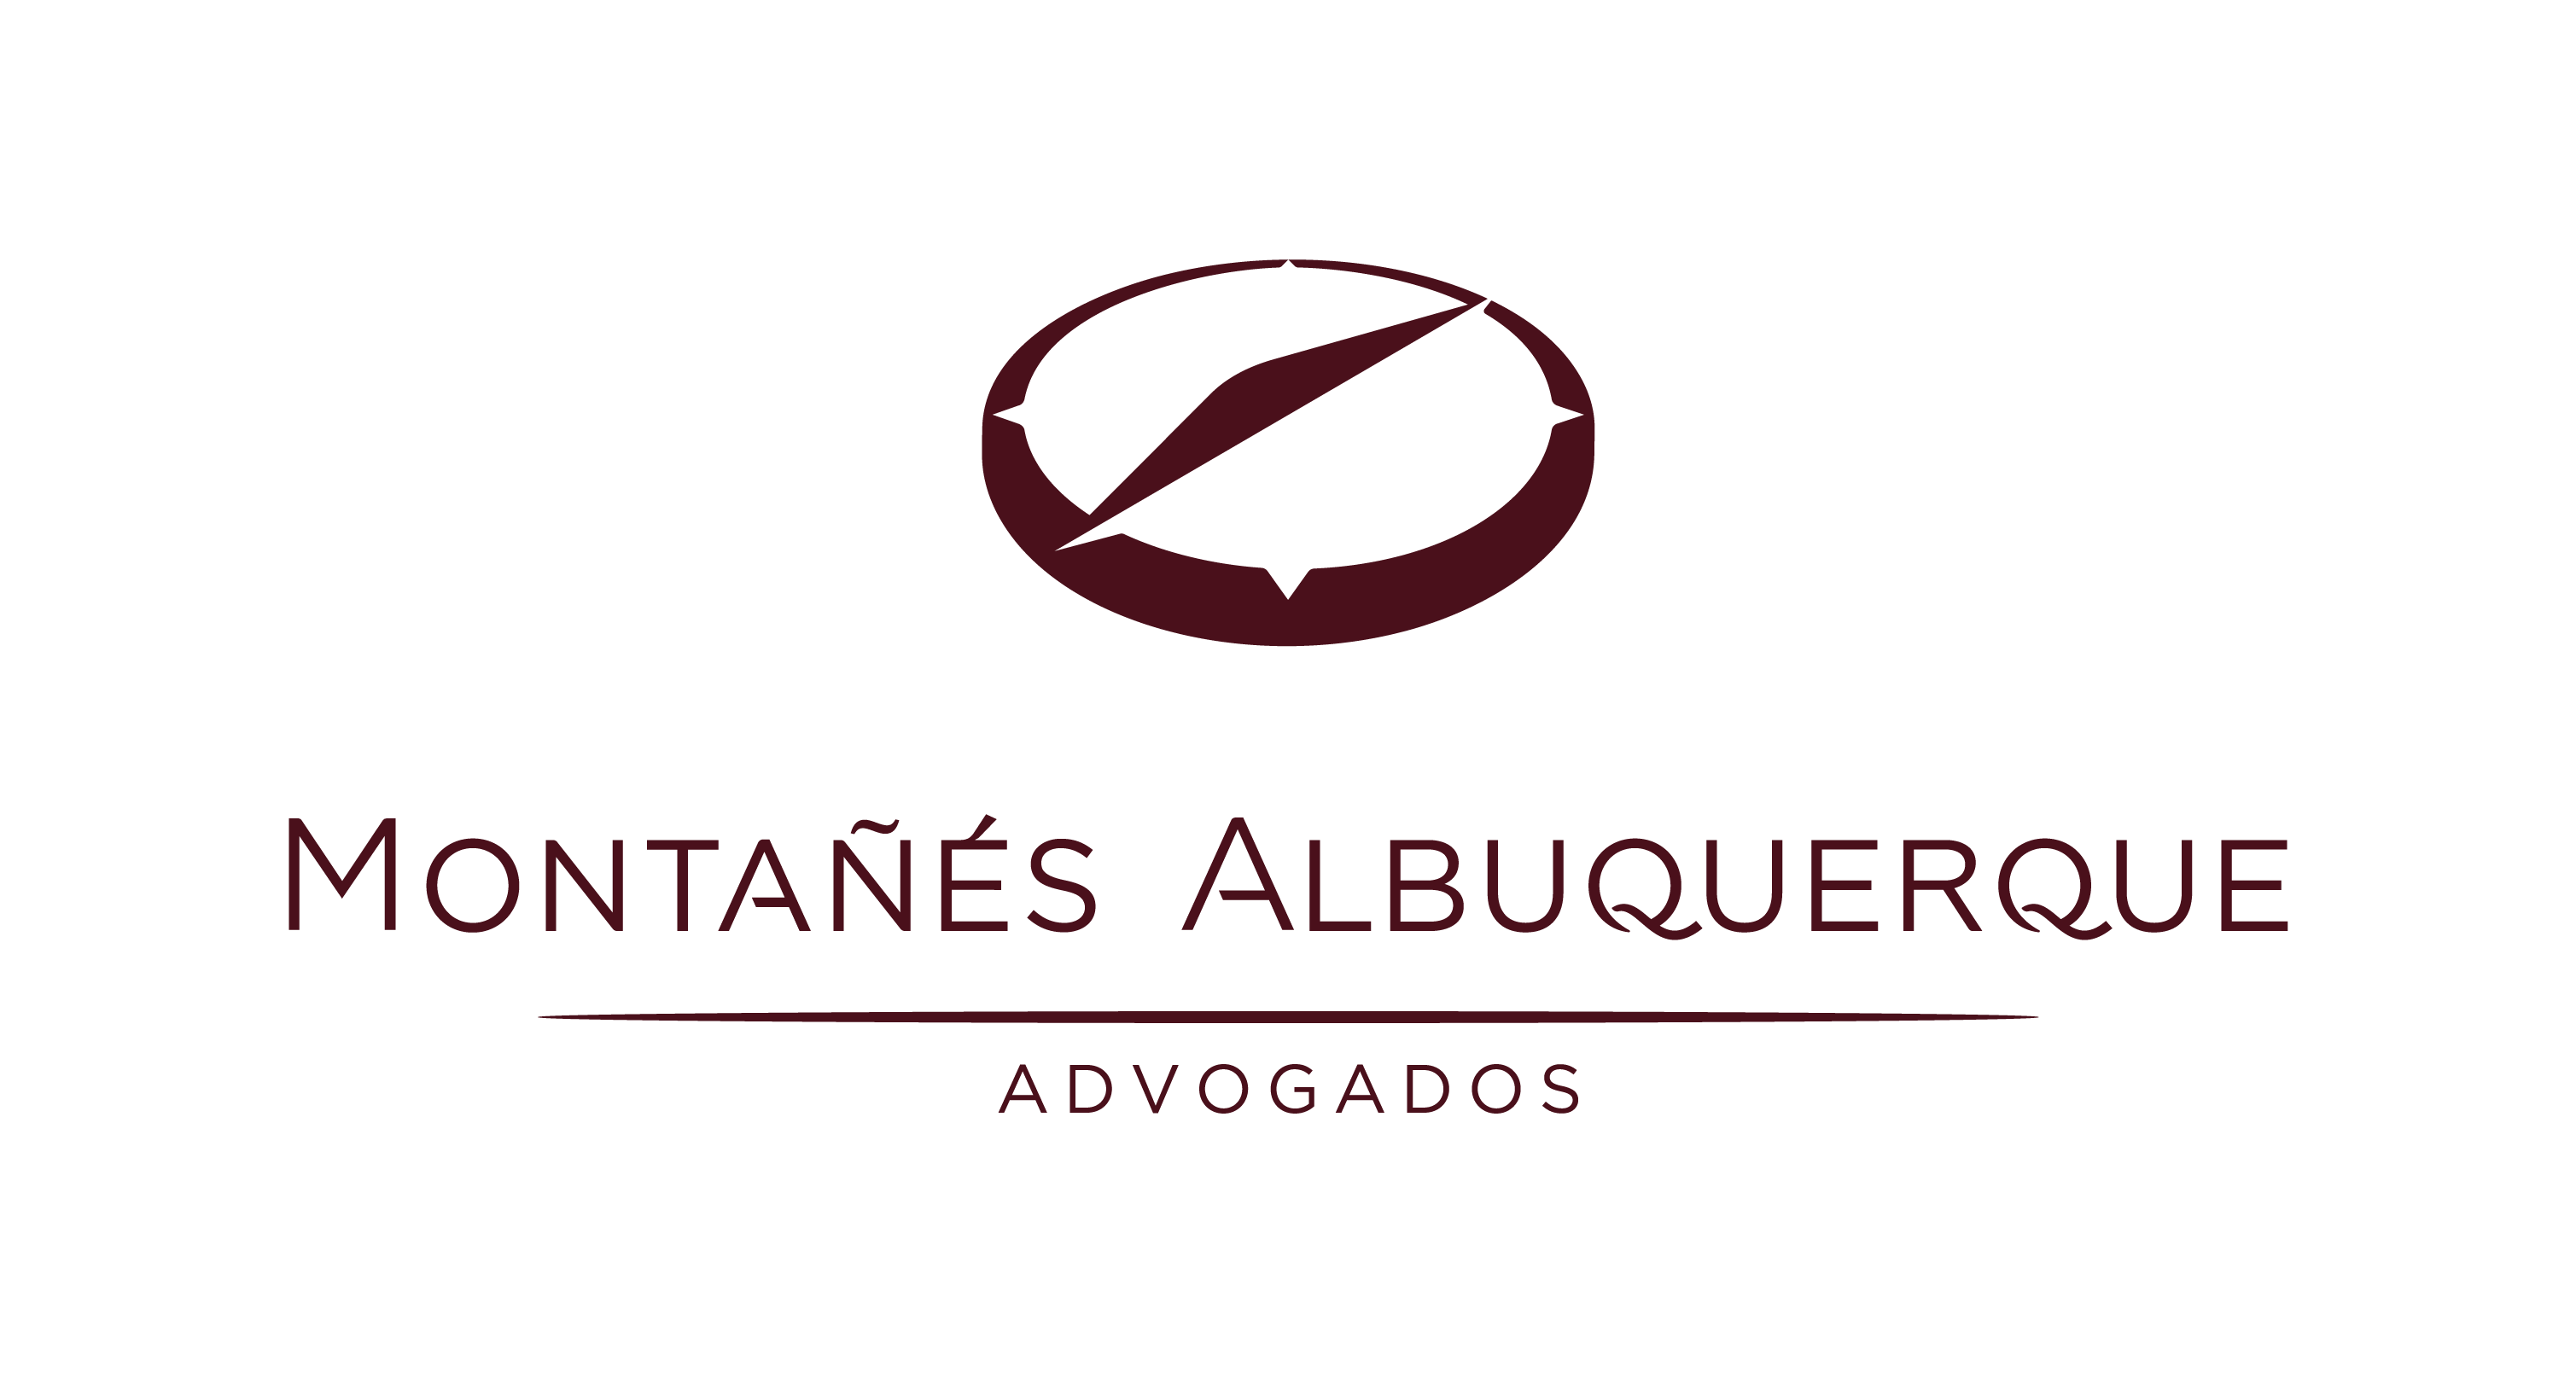 Montanes Albuquerque